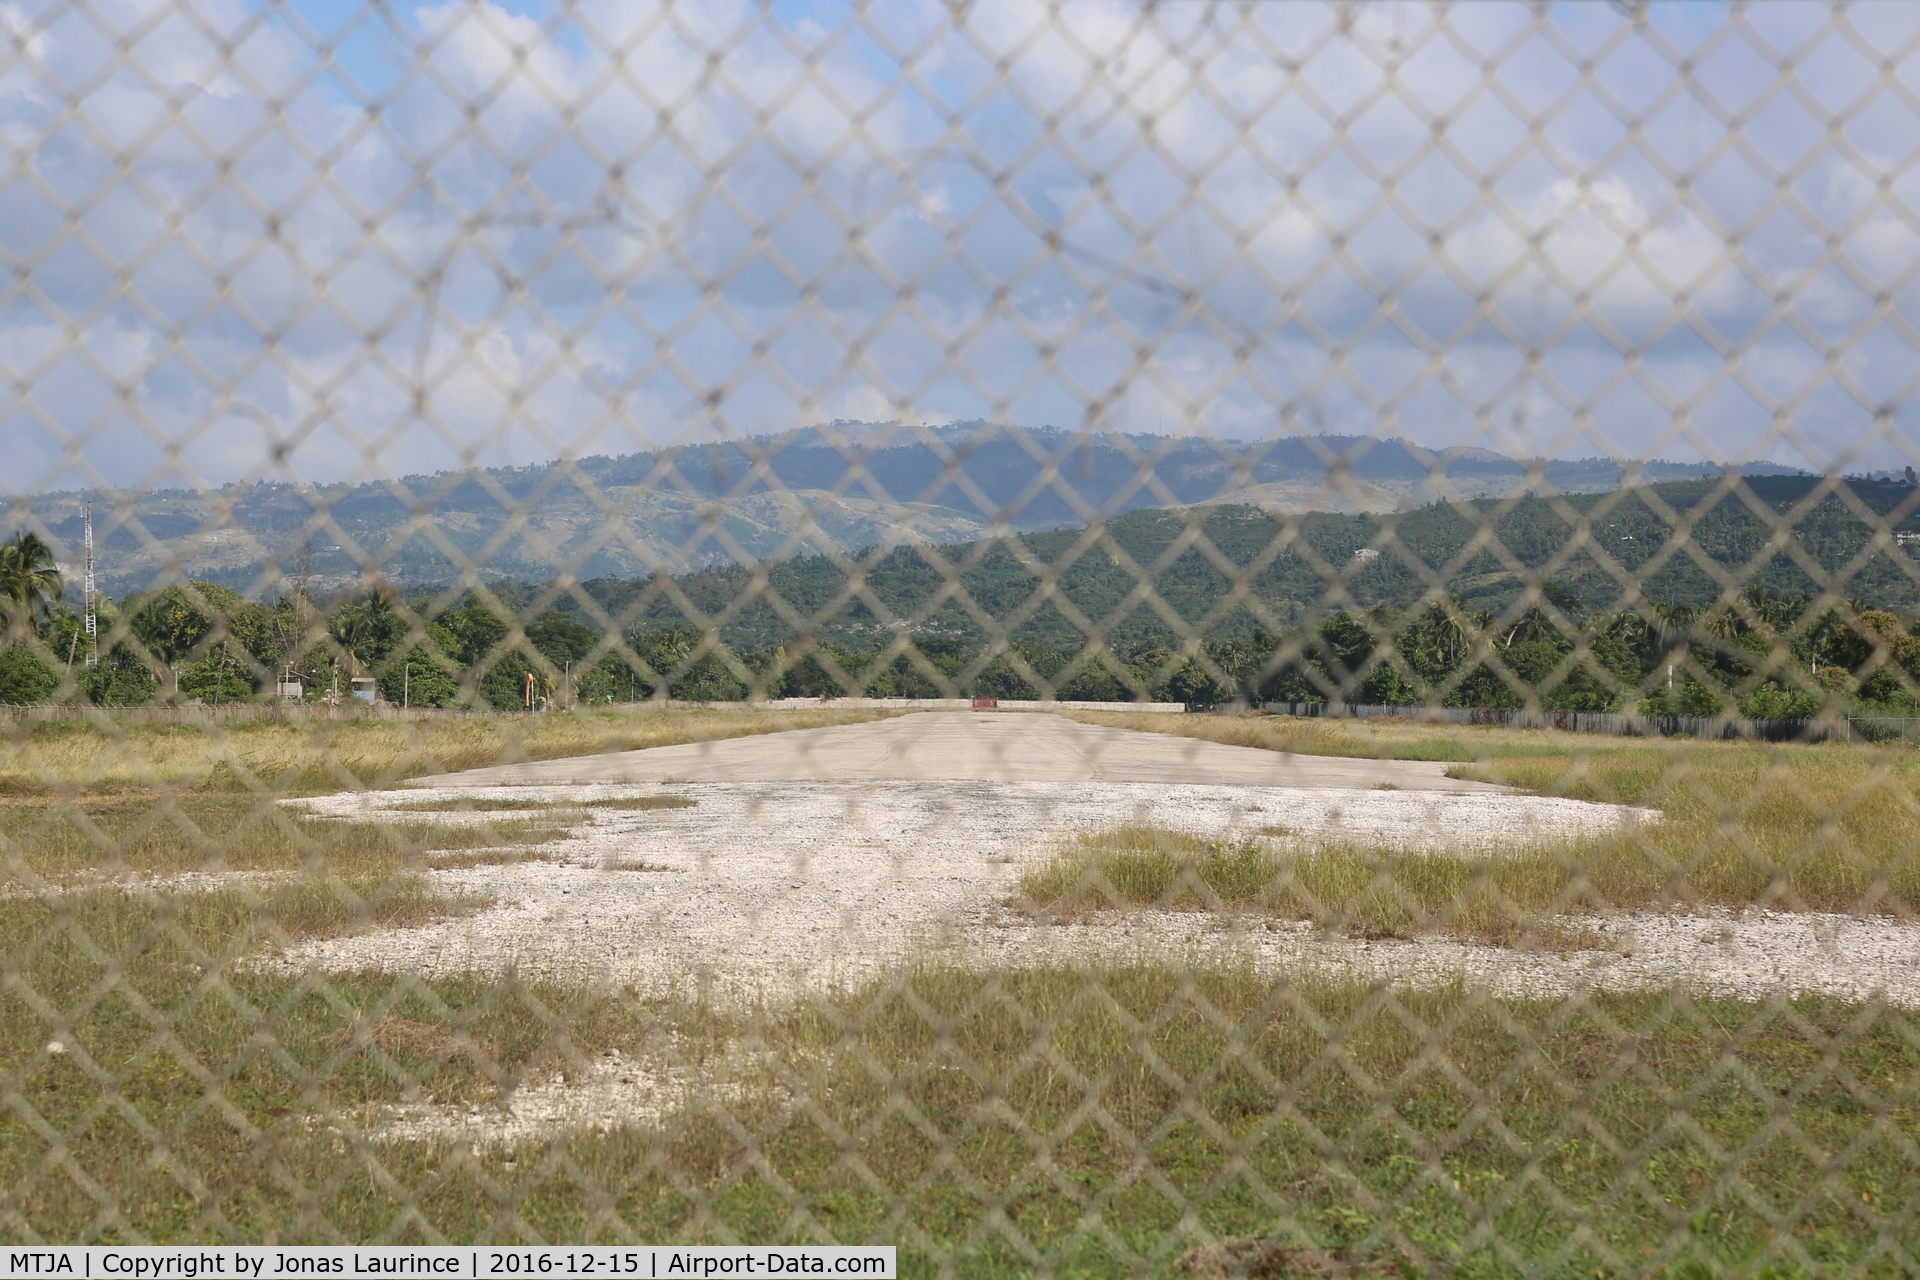 Jacmel Airport, Jacmel Haiti (MTJA) - Jacmel Airport Runway 